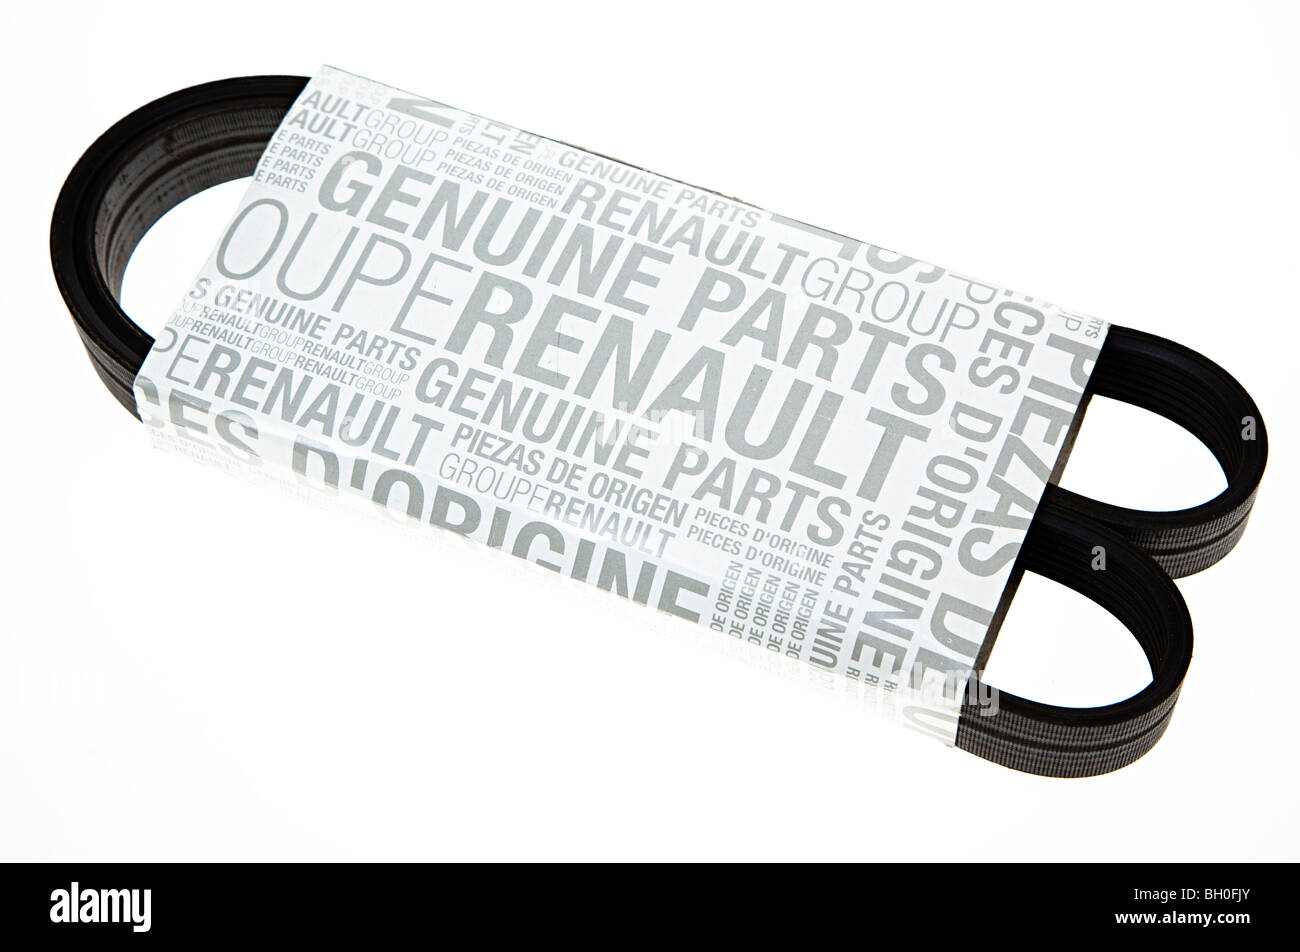 Las piezas originales de Renault en el embalaje de la correa del ventilador Foto de stock